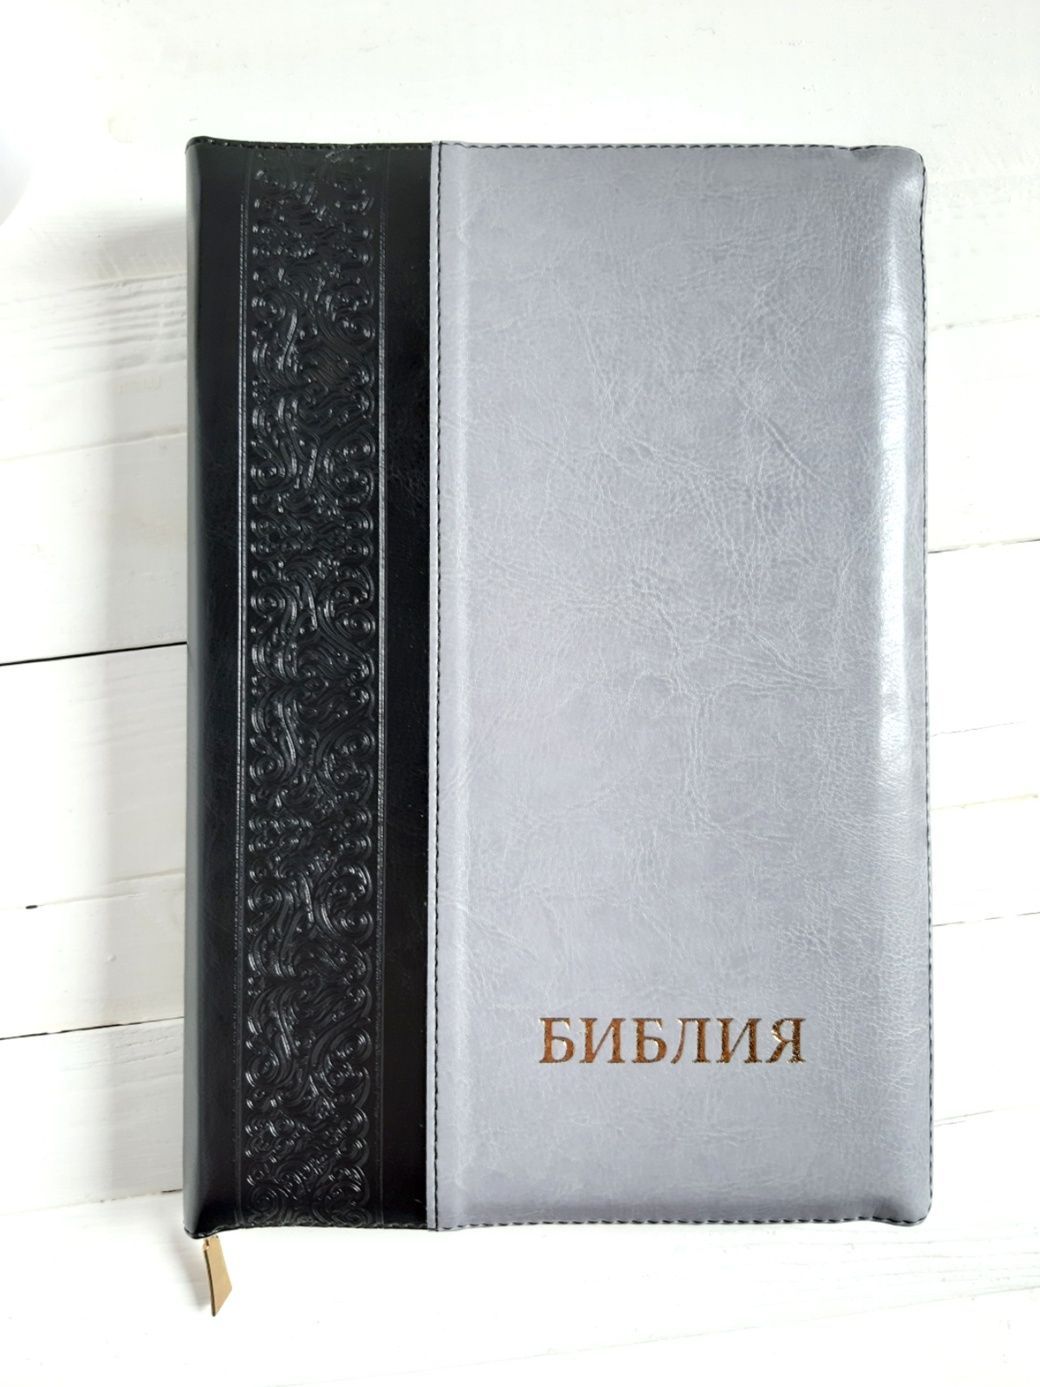 Библия 077DTzti формат, переплет из искусственной кожи на молнии с индексами, надпись золотом "Библия", цвет черный/ серый металлик, большой формат, 180*260 мм, цветные карты, крупный шрифт